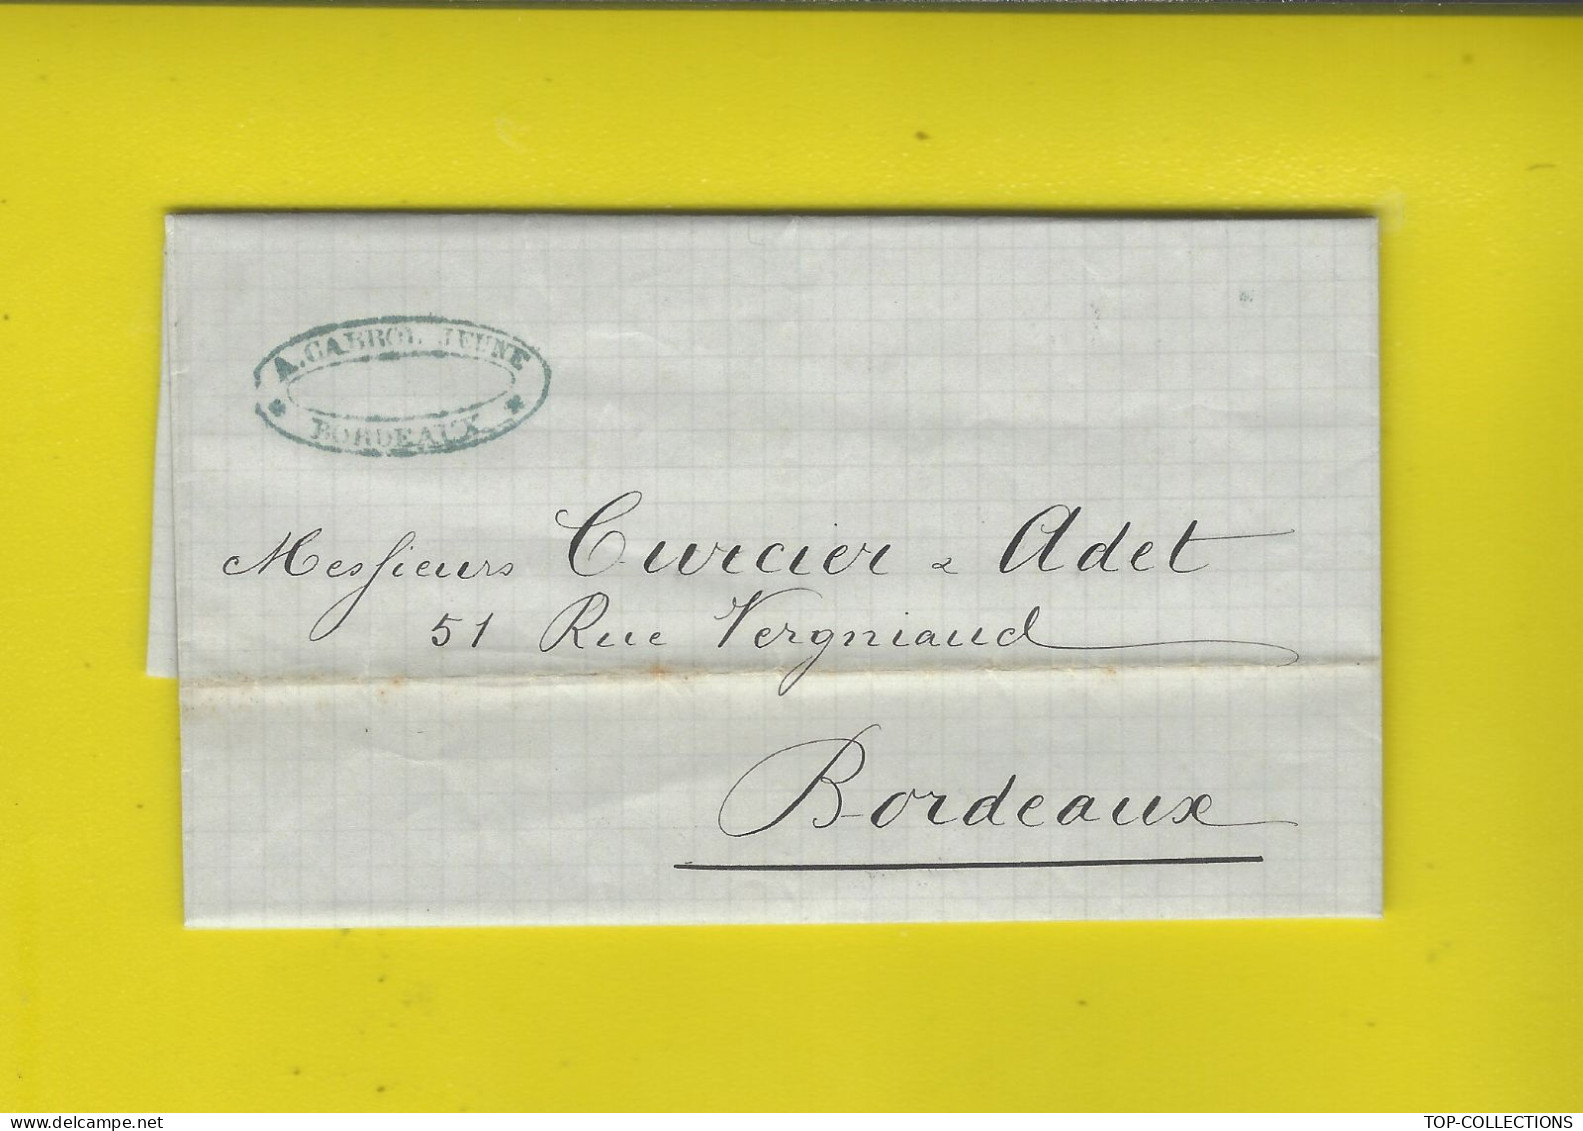 NAVIGATION 1875 ENTETE A. Cabrol Jeune Armateur Bordeaux Armement Navire « Eugène Marie » Allant à Nouméa Cargaison Eau - 1800 – 1899